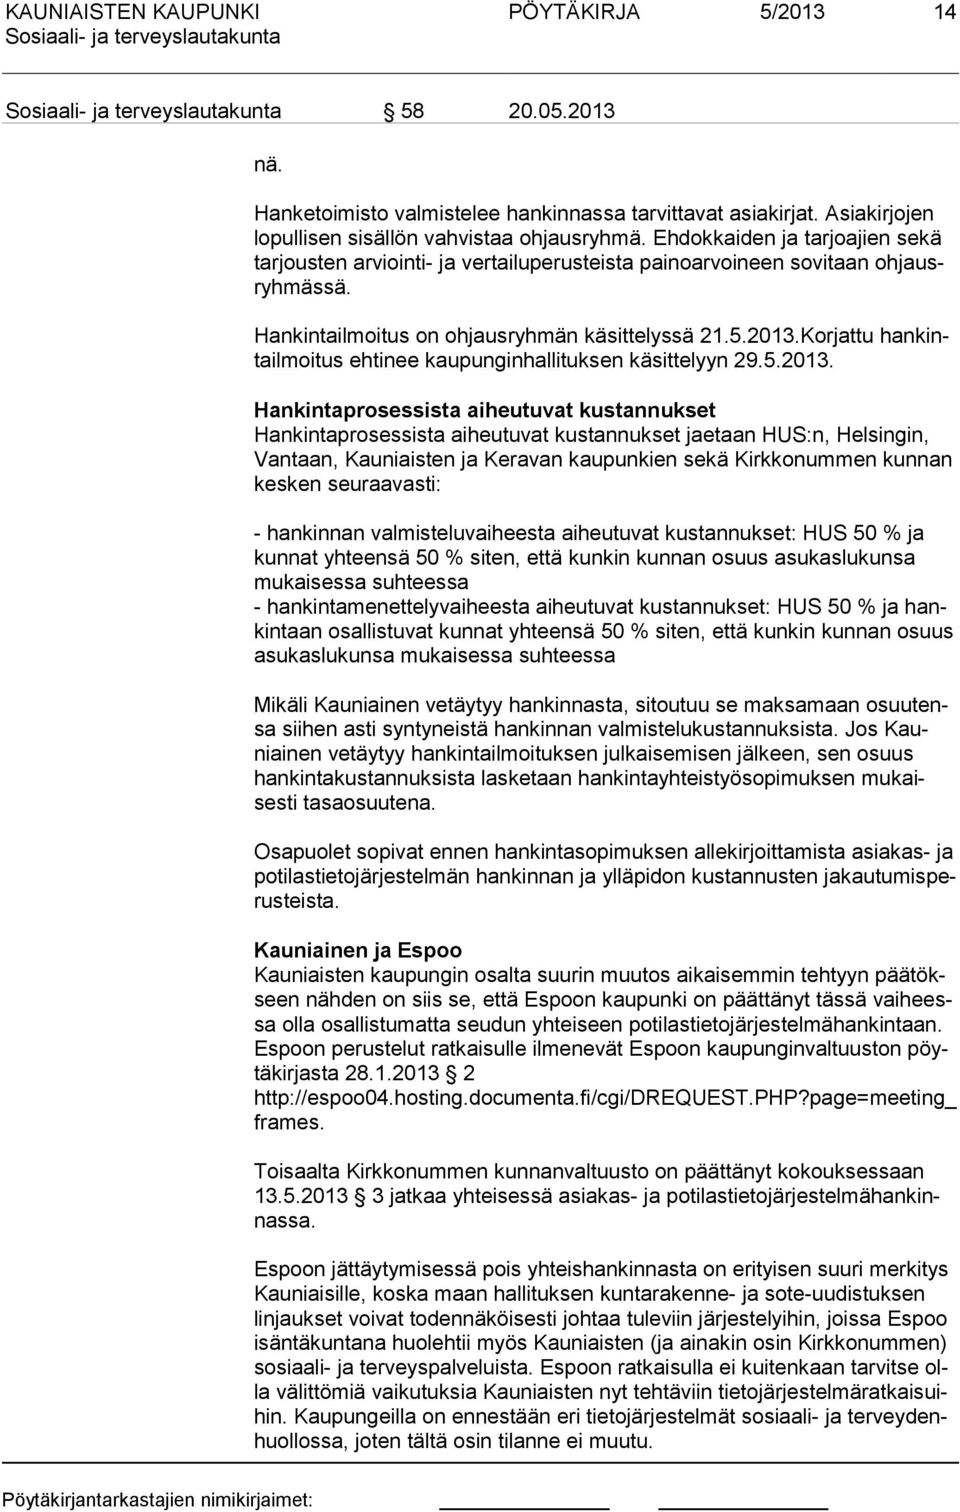 Korjattu hankintailmoitus ehtinee kaupunginhallituksen käsittelyyn 29.5.2013.